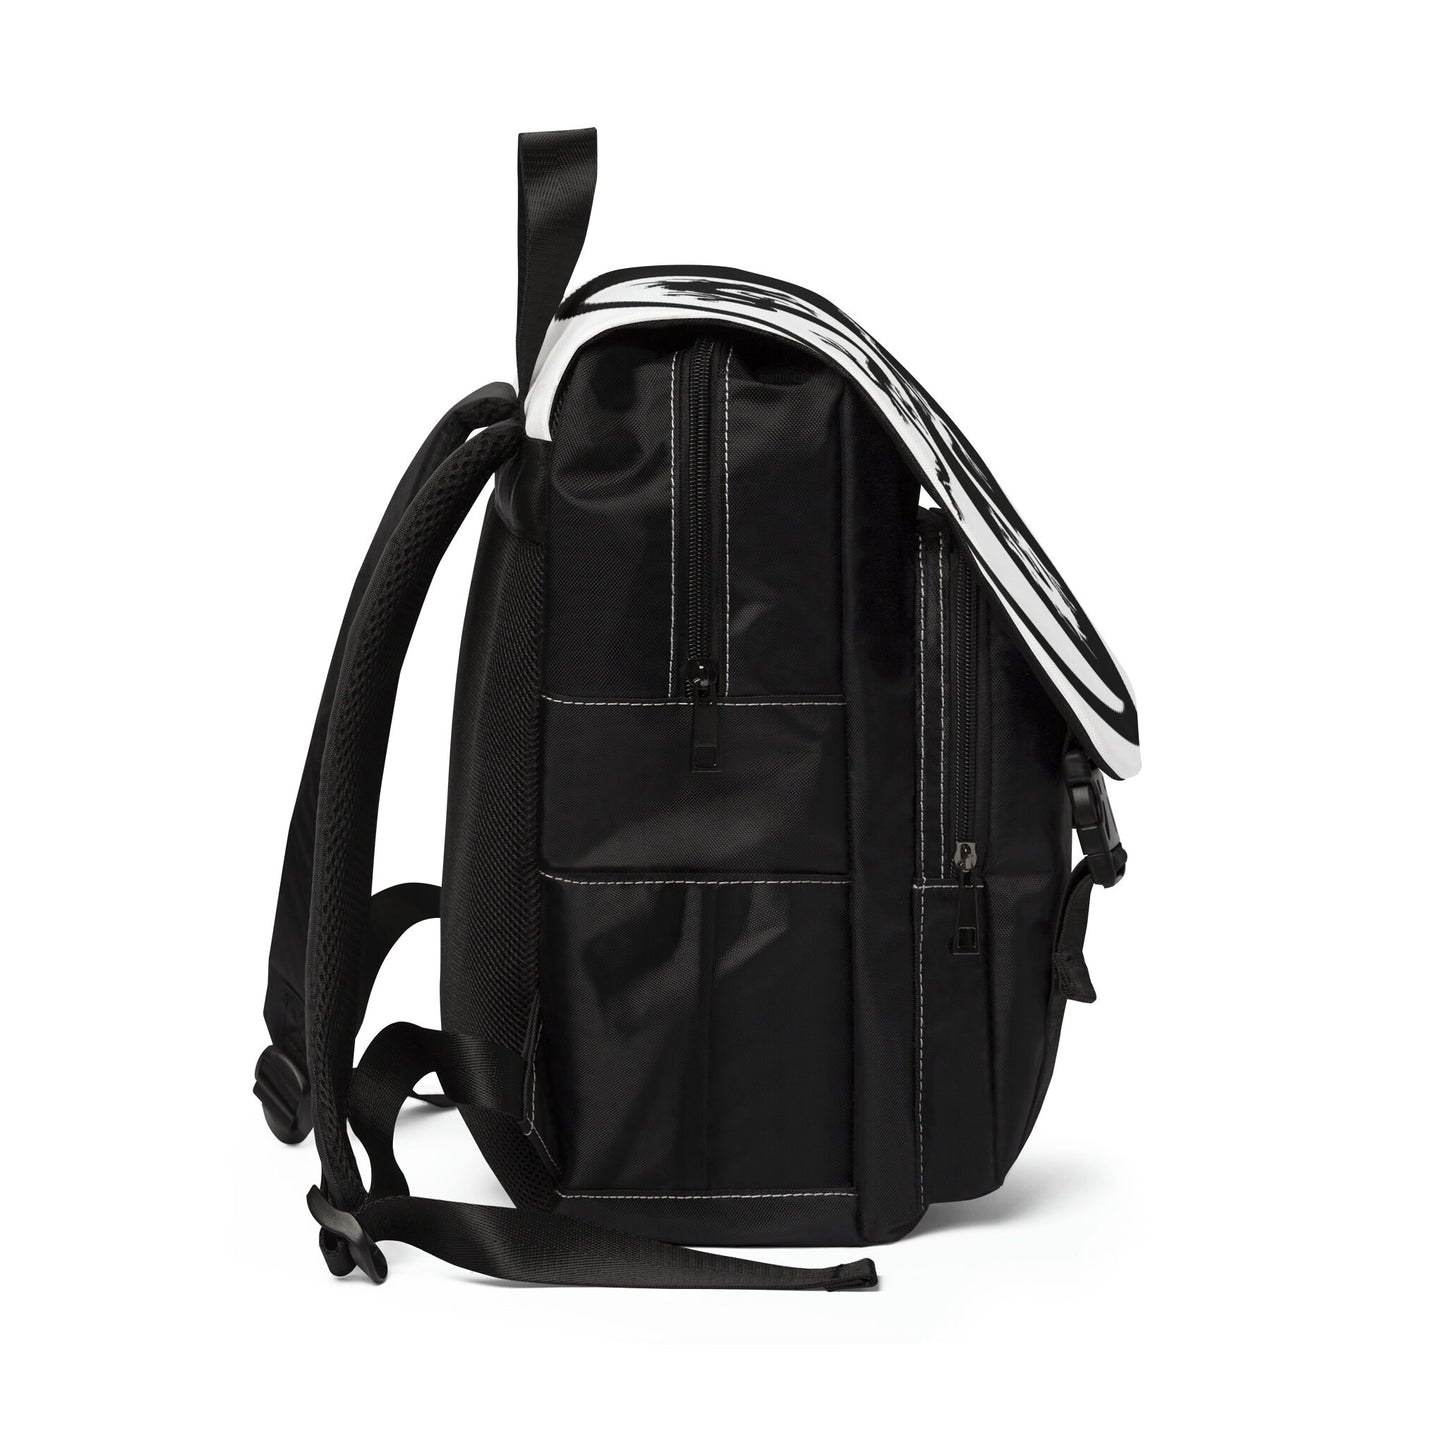 Yin and Yang Backpack